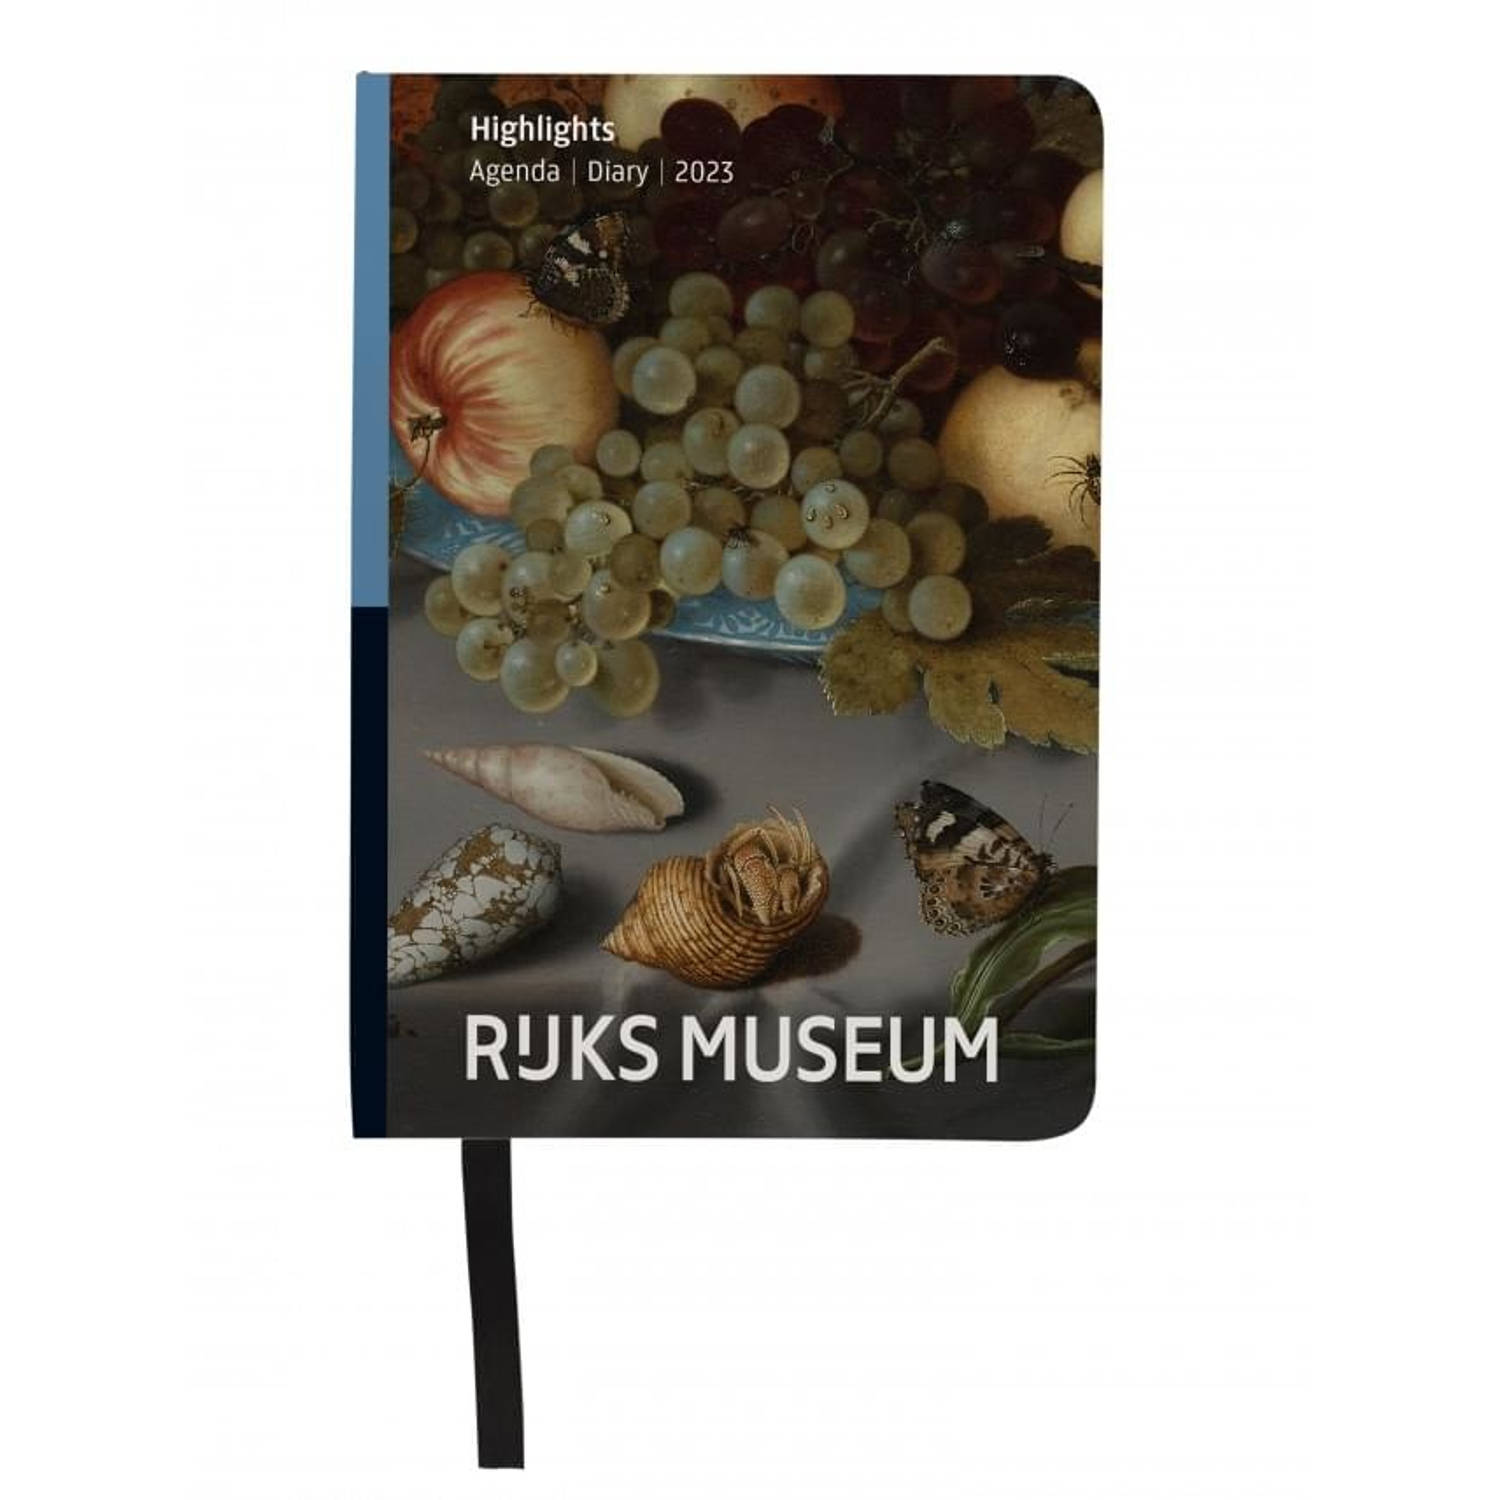 Bekking & Blitz - Miniagenda 2023 - Rijksmuseum Amsterdam mini agenda 2023 - Zakagenda - 11 x 15 cm - Kunstagenda - Museumagenda - Met handig leeslint - Weekoverzicht op 1 pagina